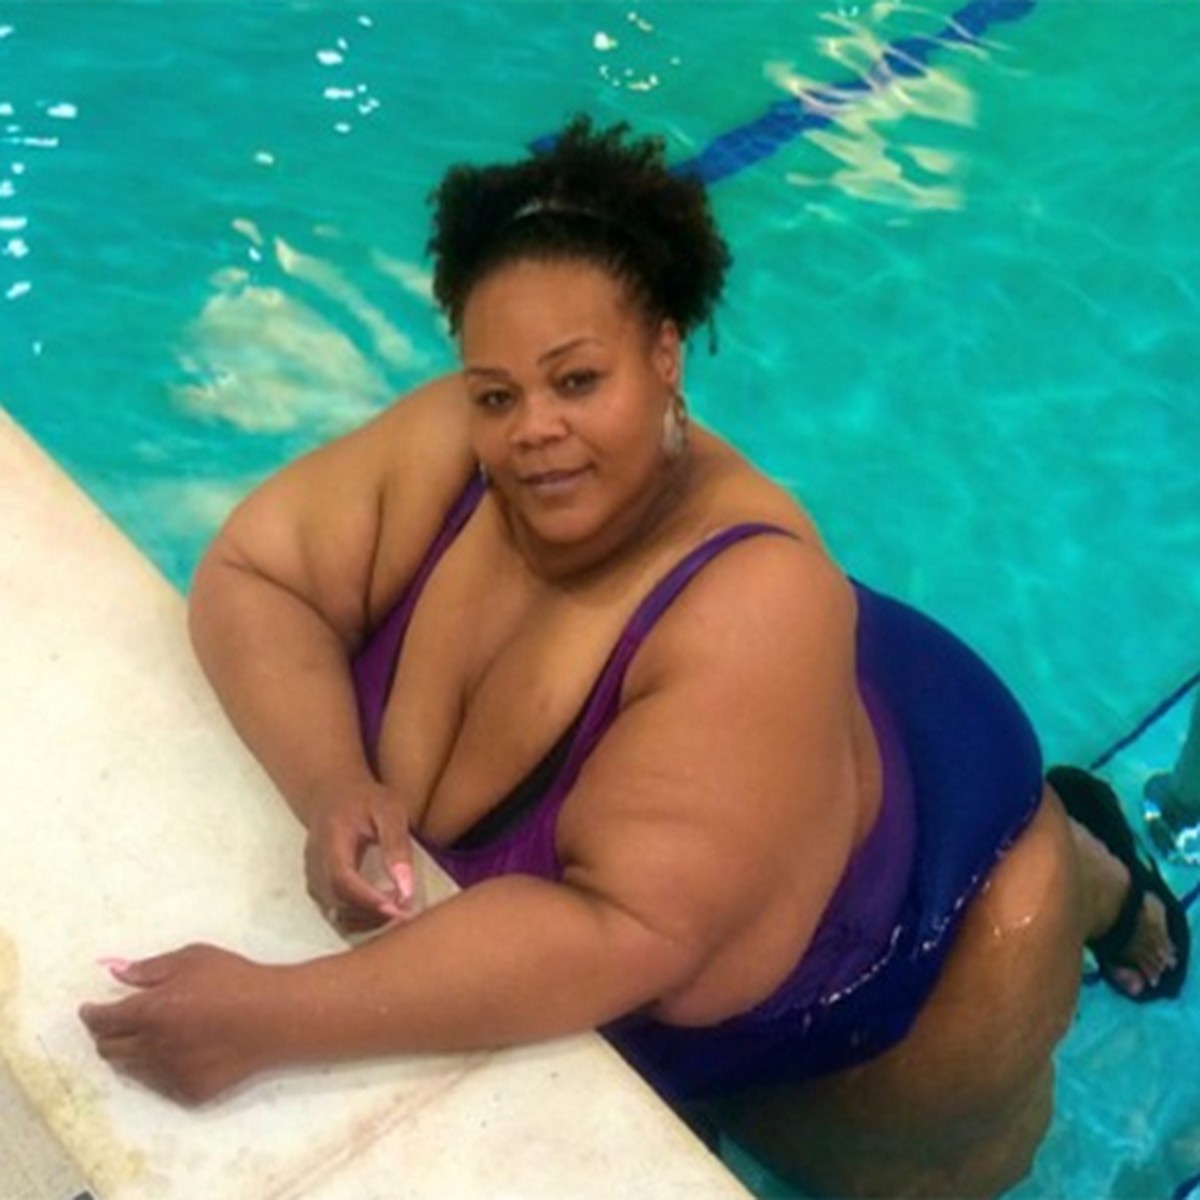 Самая толстая женщина в мире похудела на 230 килограммов и купила себе бикини